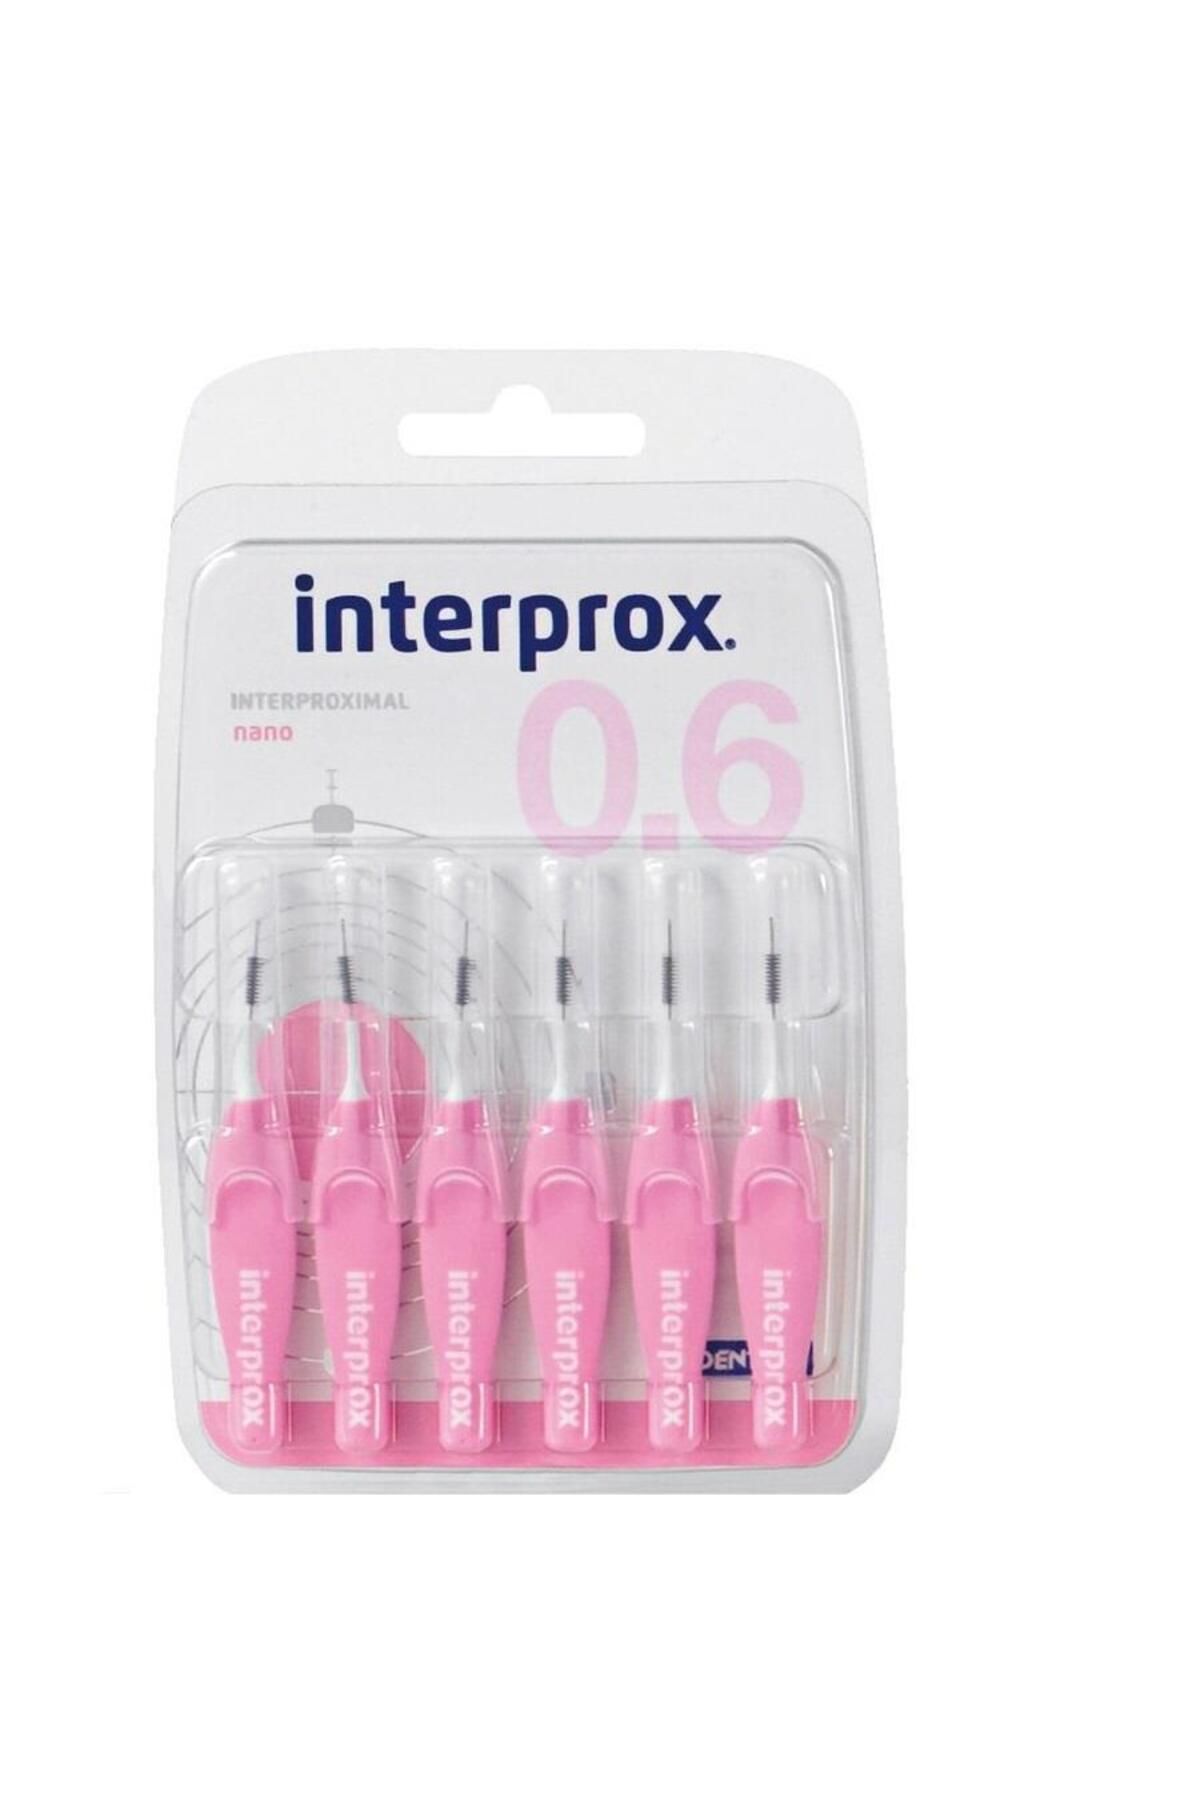 İnterprox Interprox Interproximal Nano 0.6mm Arayüz Fırçası 6 Adet Pembe